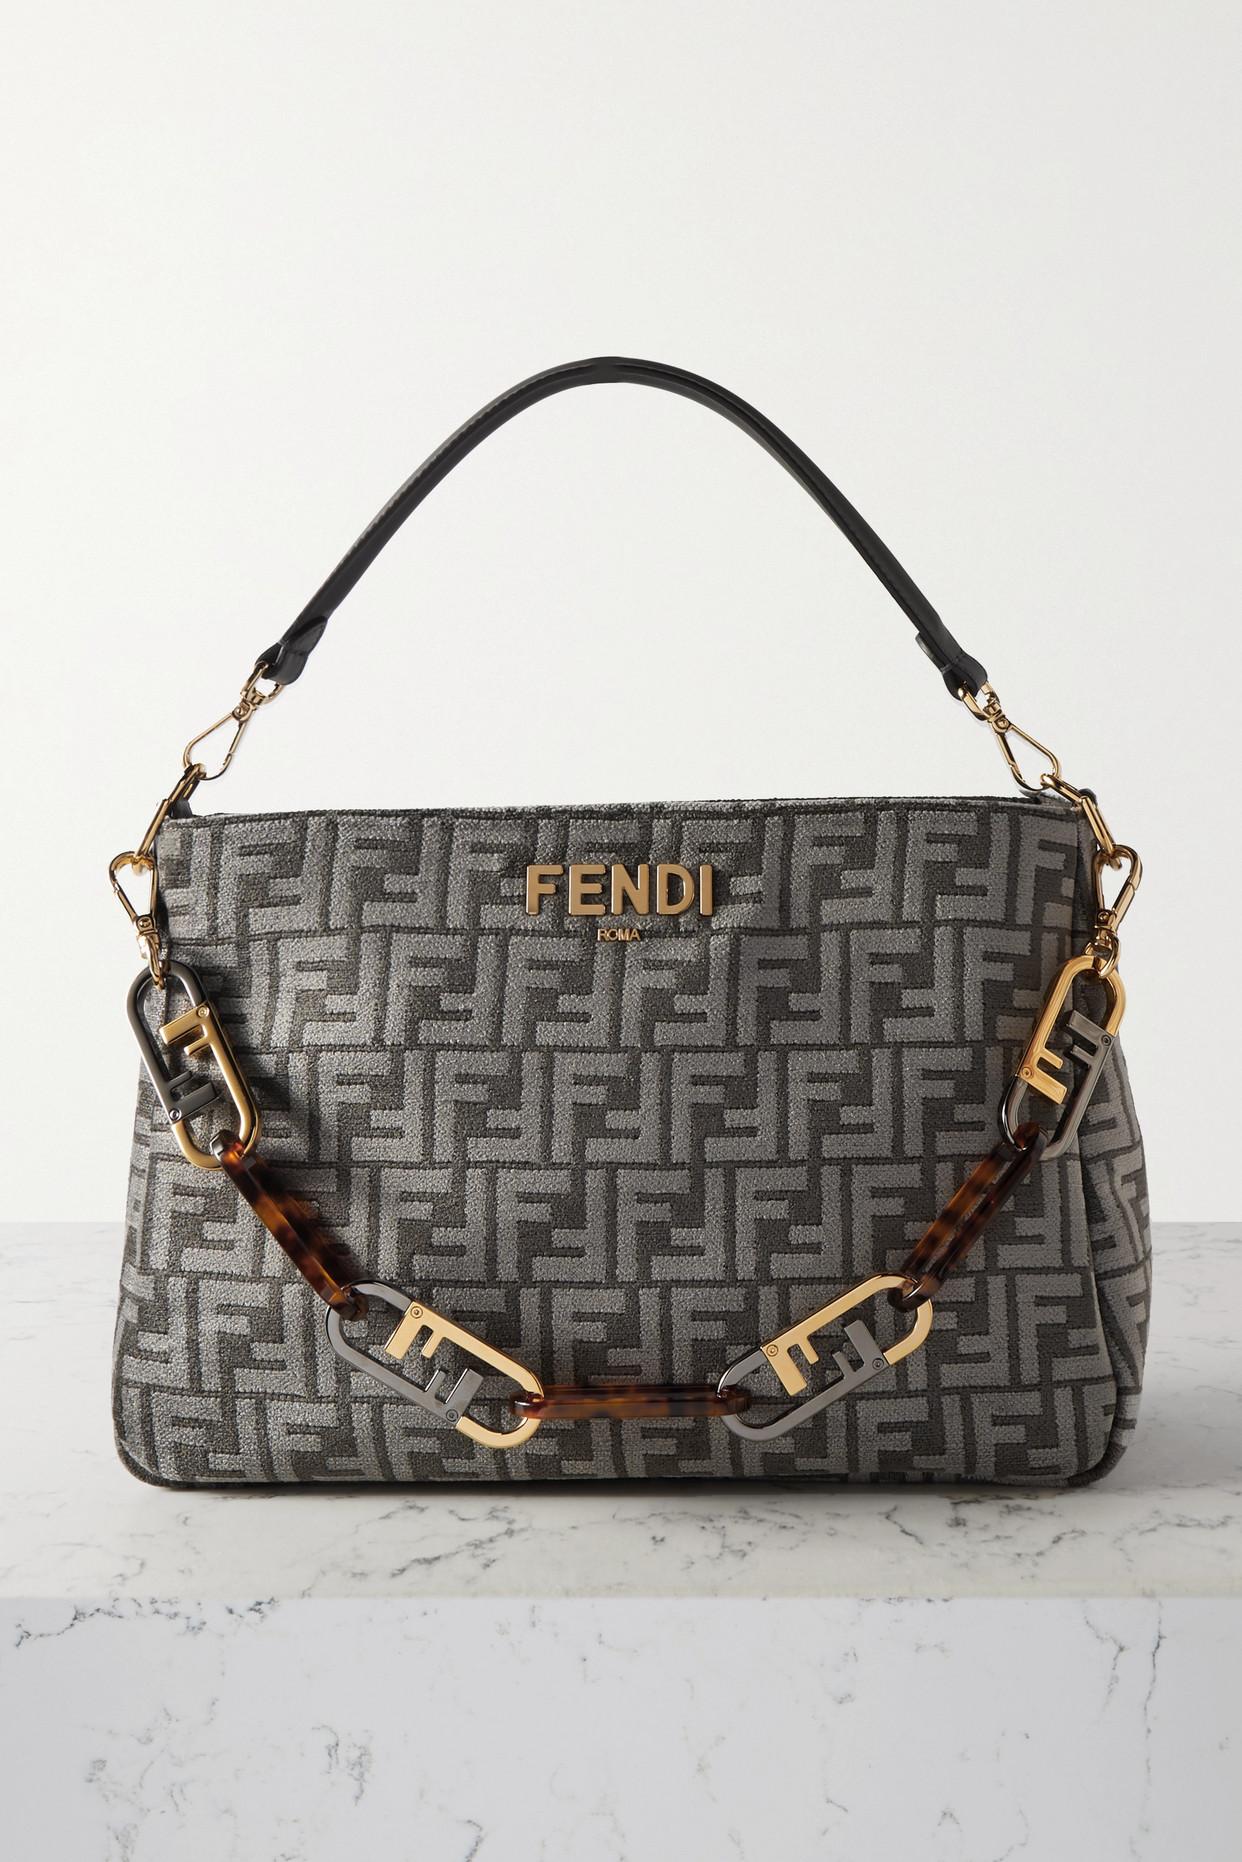 Women's Fendi Bags from $590